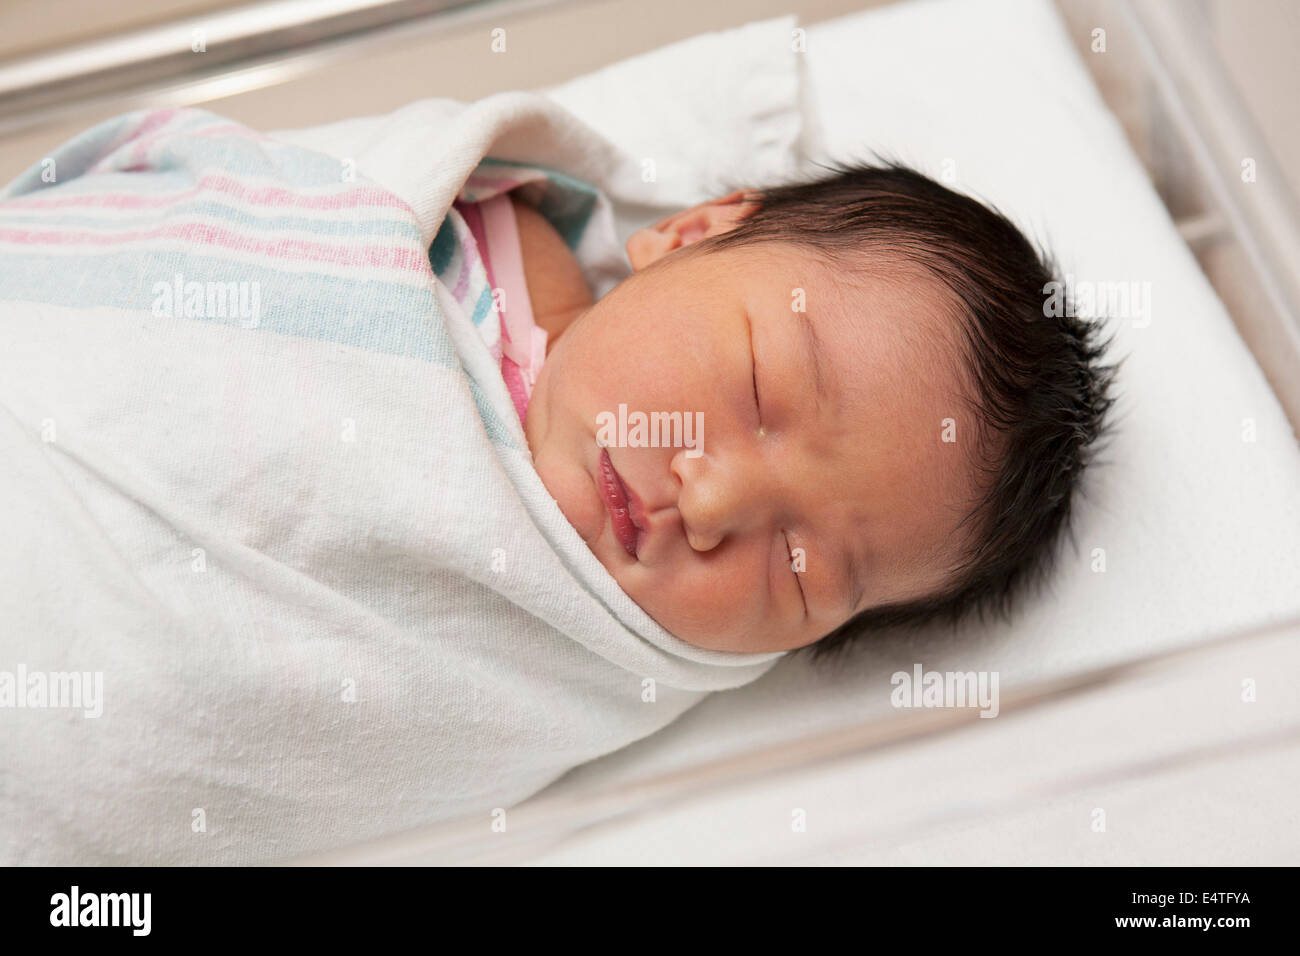 Bebé Recién Nacido En Un Hospital Durmiendo En Bassinet Imagen de archivo -  Imagen de hembra, nacimiento: 165675493, recien nacido niña 